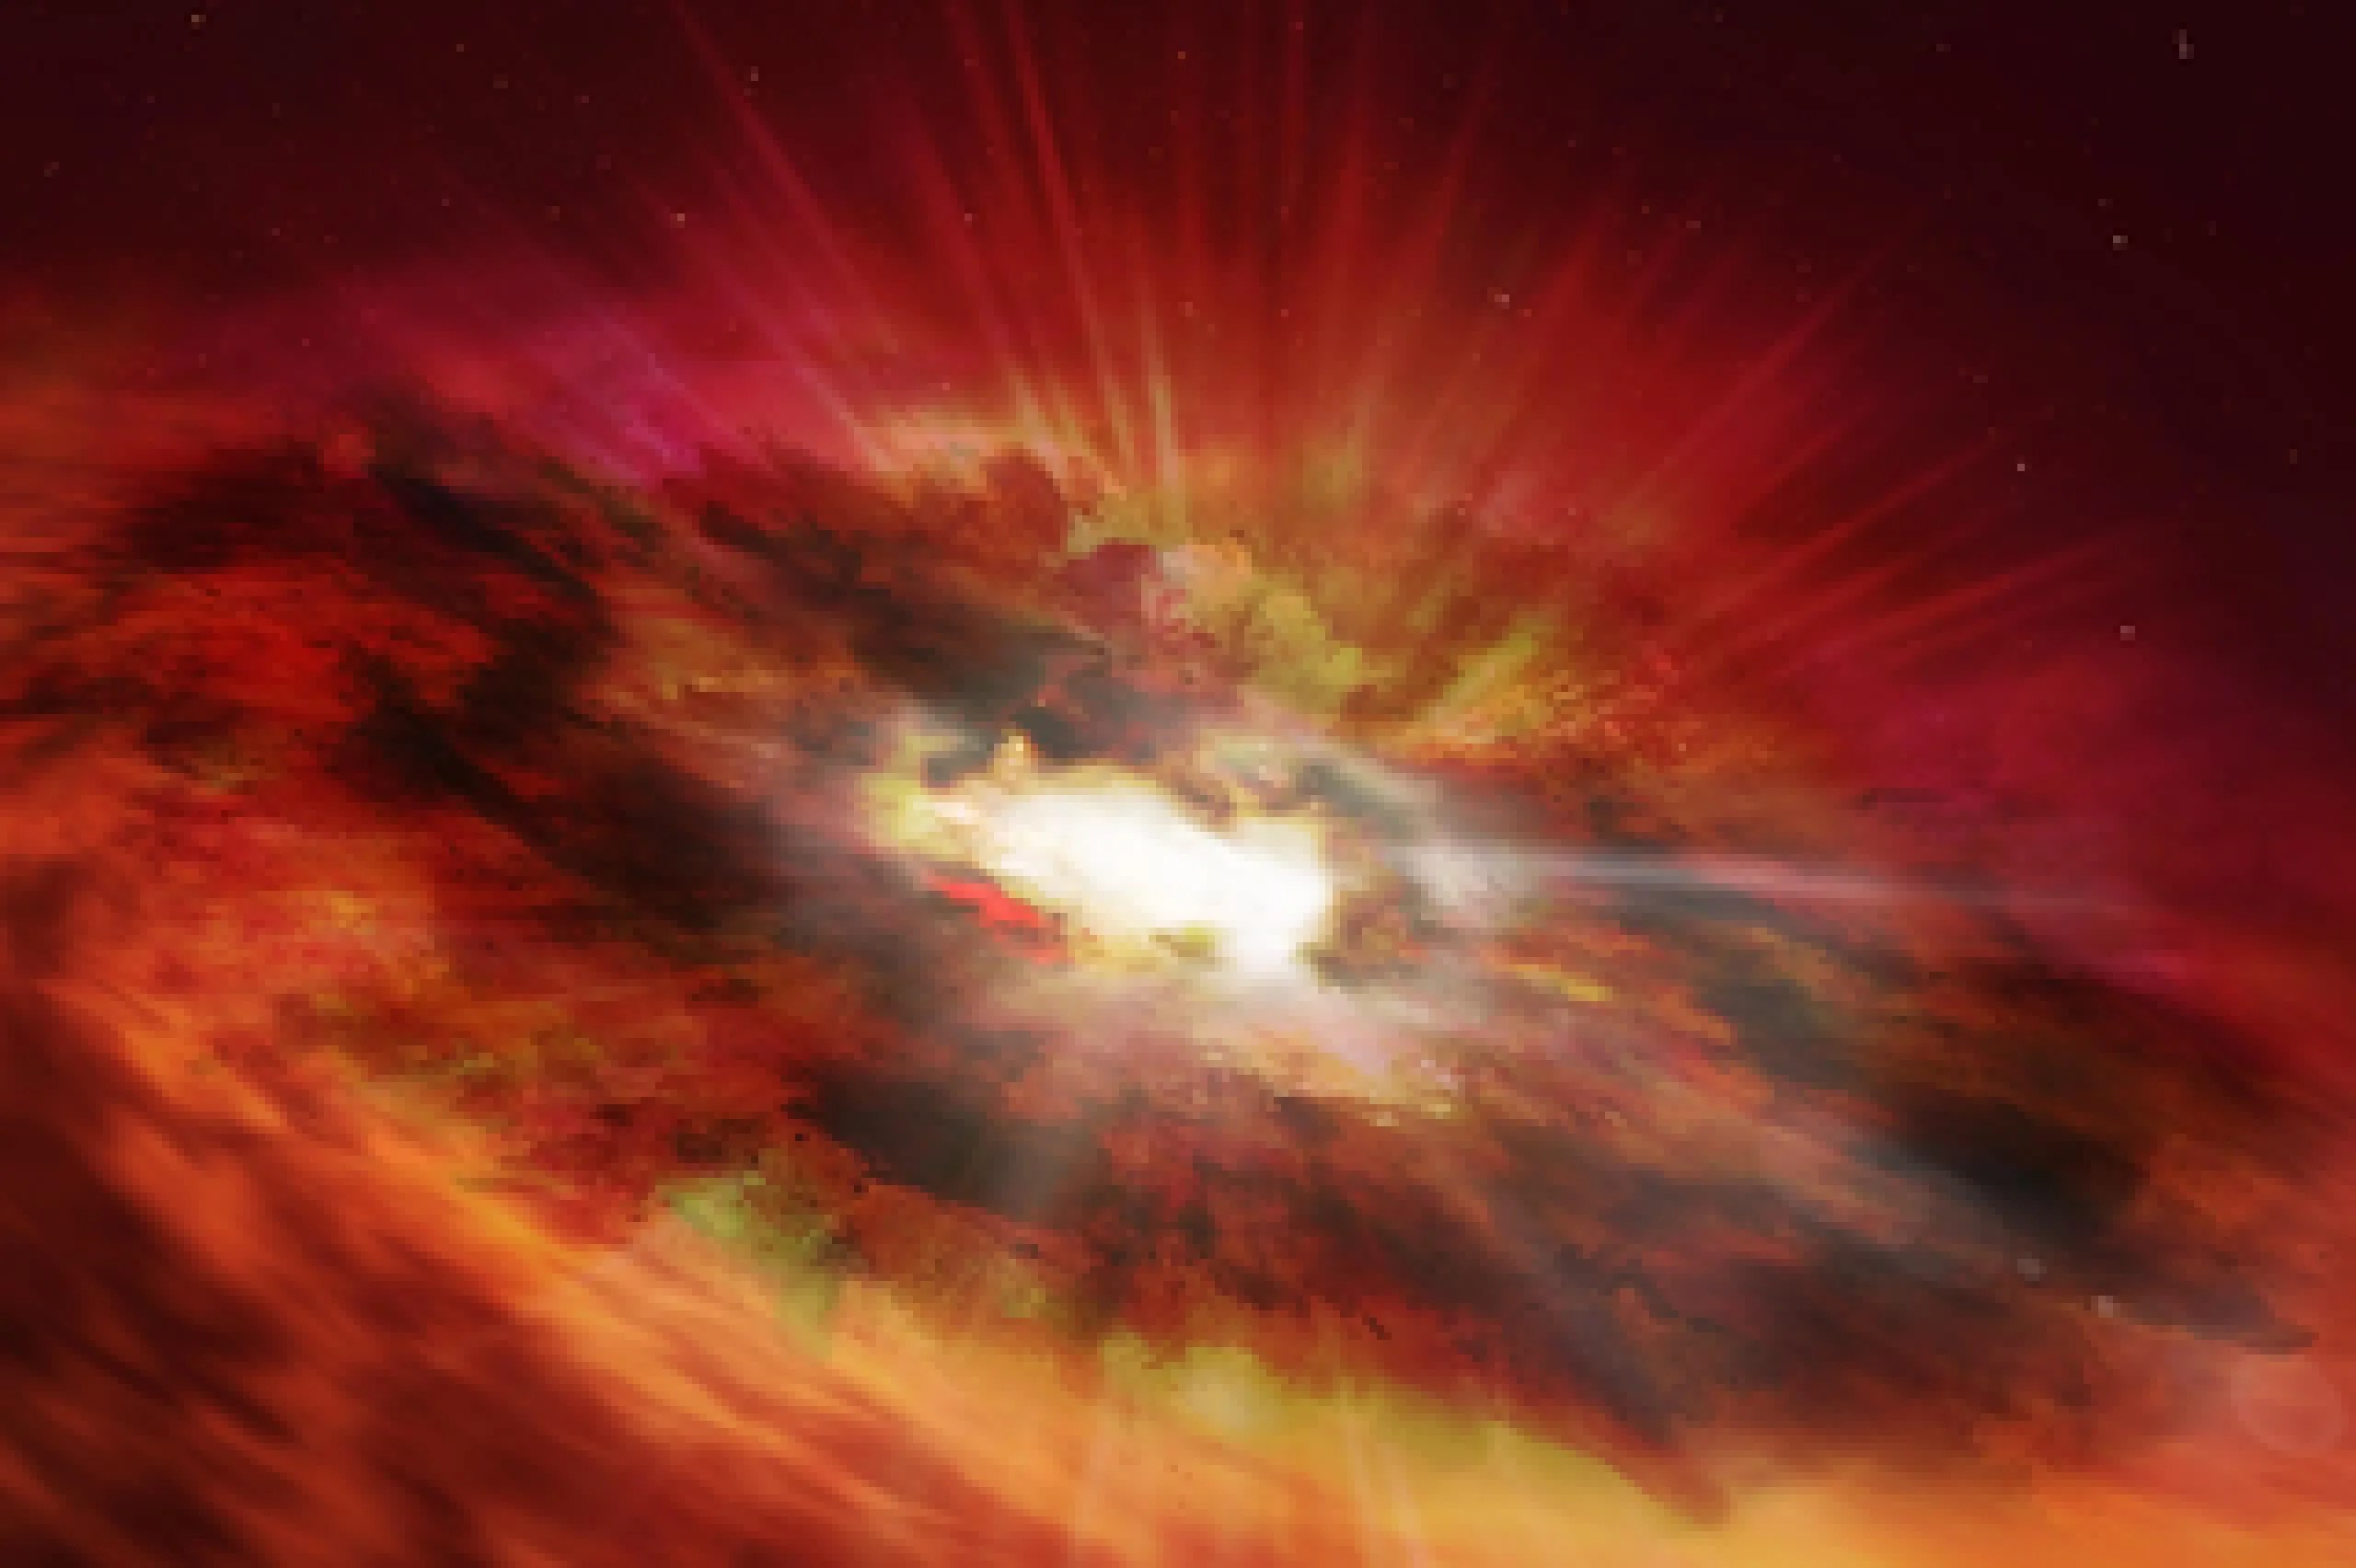 Esta es una perspectiva artística de un agujero negro supermasivo dentro del núcleo envuelto en polvo de una galaxia starburst con una intensa formación estelar. Eventualmente se convertirá en un cuásar extremadamente brillante una vez que el polvo se haya dispersado. El equipo de investigación cree que el objeto, descubierto en un sondeo del cielo profundo hecho por el Hubble, podría ser un “eslabón perdido” evolutivo entre los cuásares y las galaxias de formación estelar. El polvoriento agujero negro se r